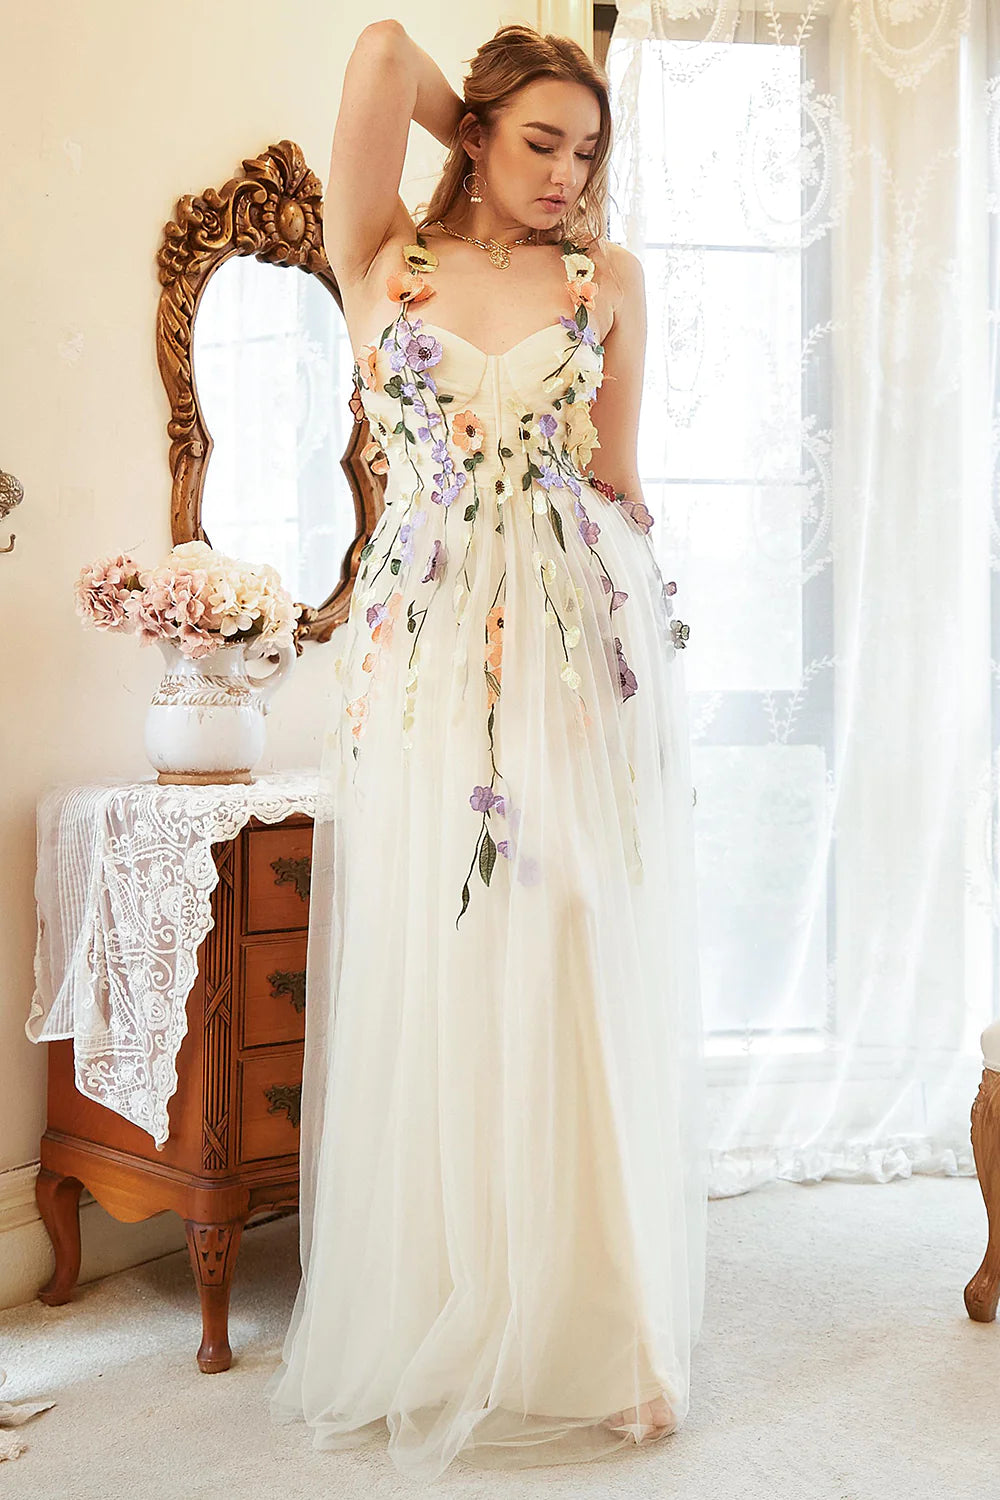 Διακοσμημένο φόρεμα με λουλούδια ΜΠΕΖ